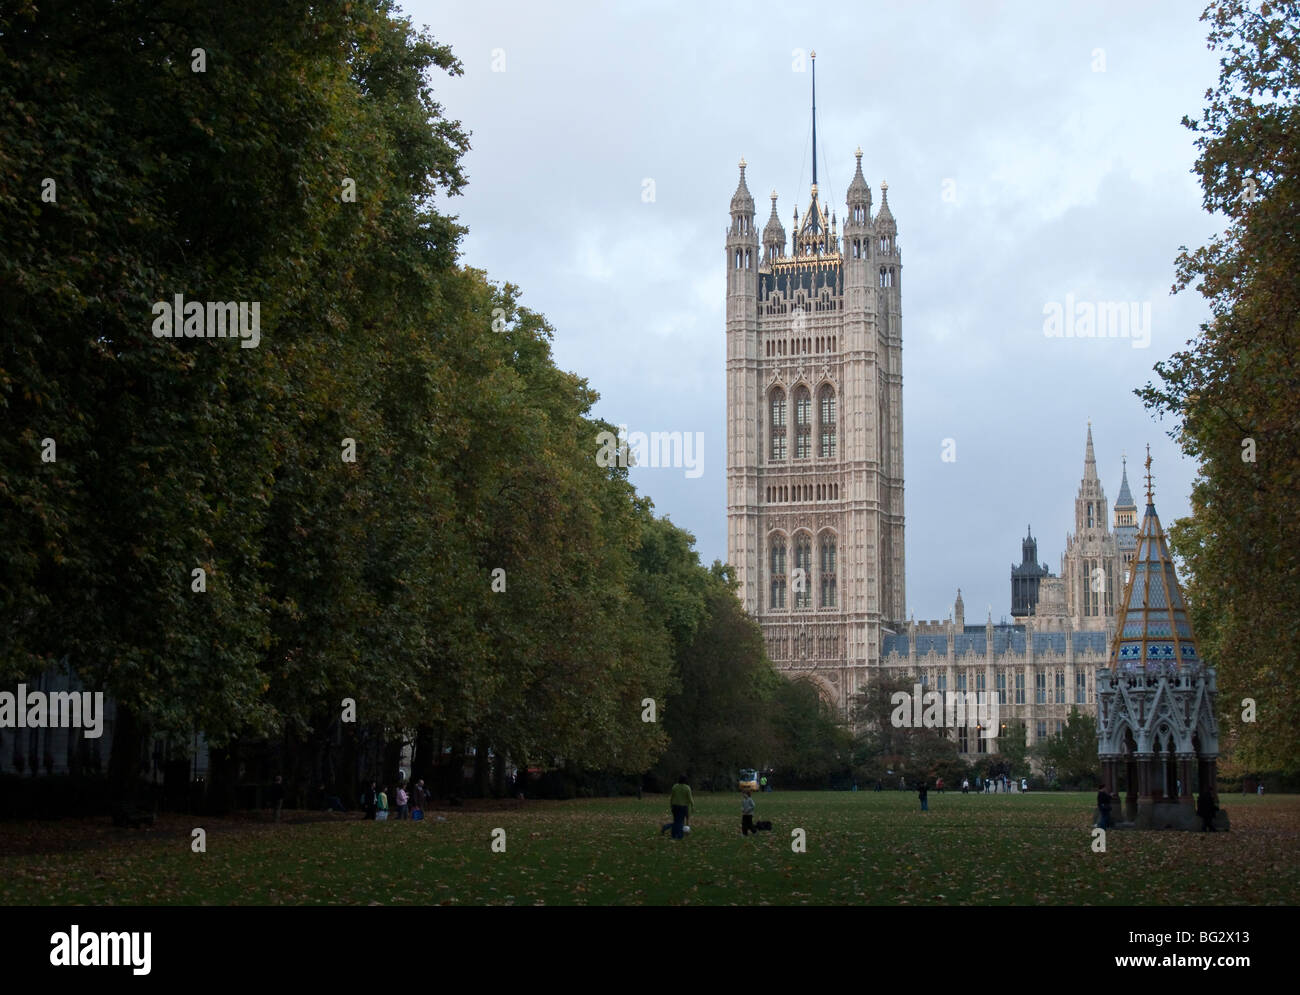 Ein Blick auf die Victoria Tower in der Palace of Westminster, London, Vereinigtes Königreich. Stockfoto